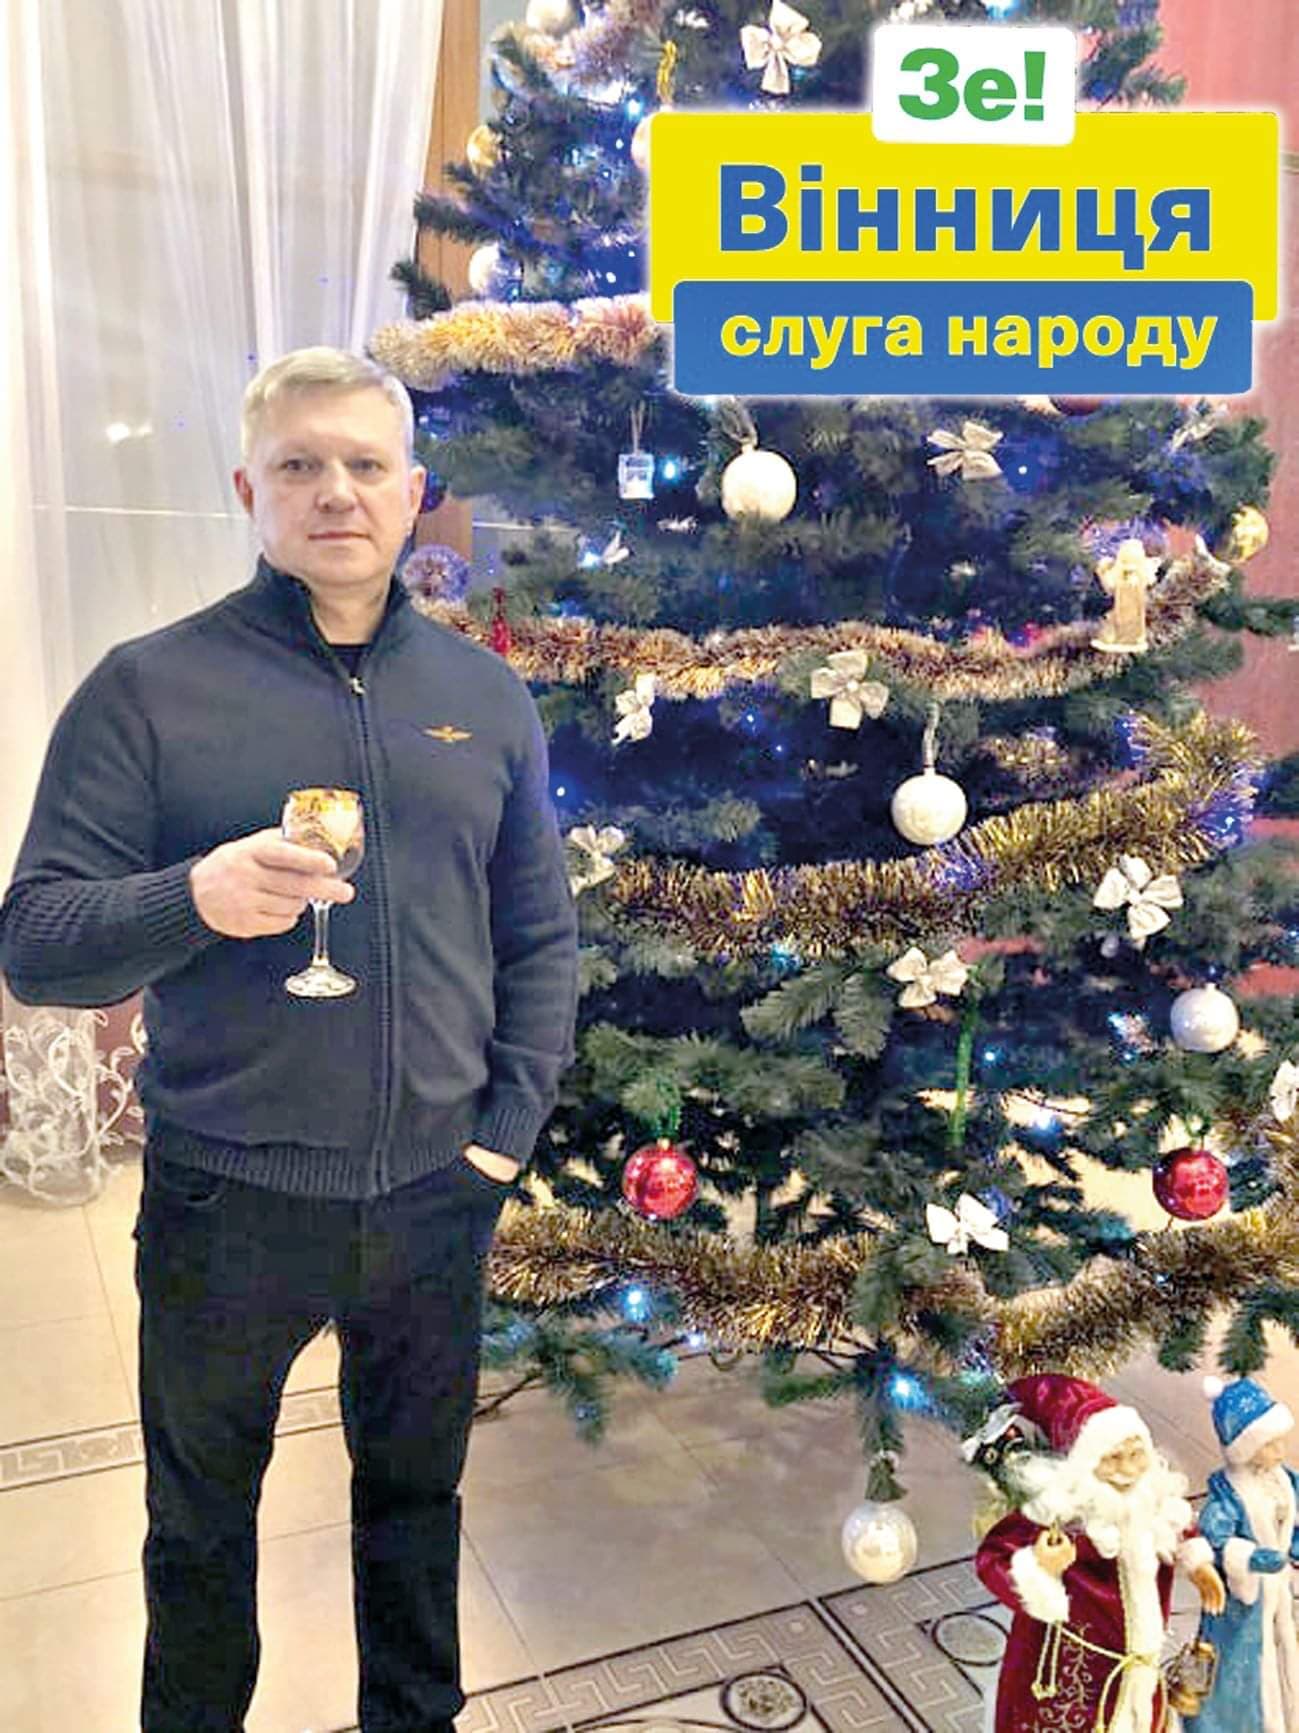 Сергій Кармаліта: Вітаю із Святим Різдвом від Команди Зе!